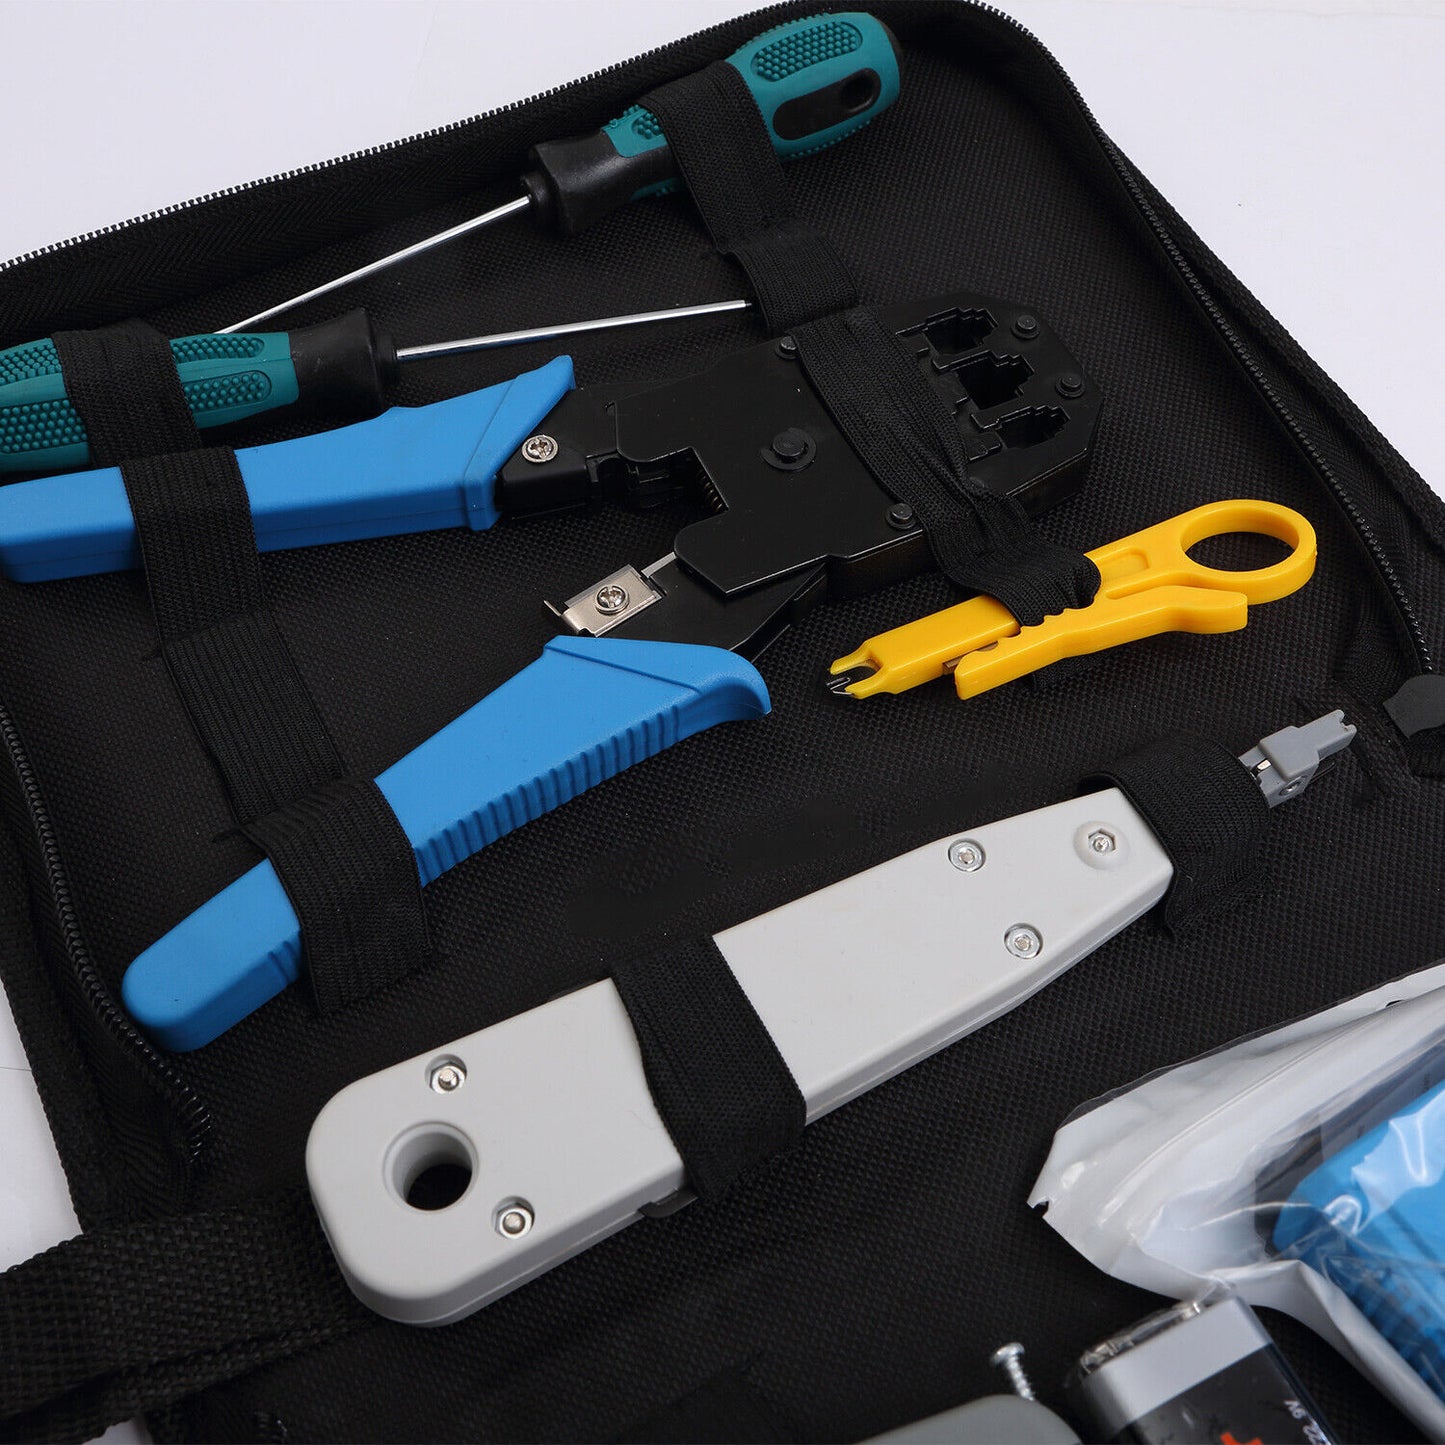 Rj45 Crimping Tool Kit Set For CAT5/CAT6 Lan Cable Tester Network Repair Tools